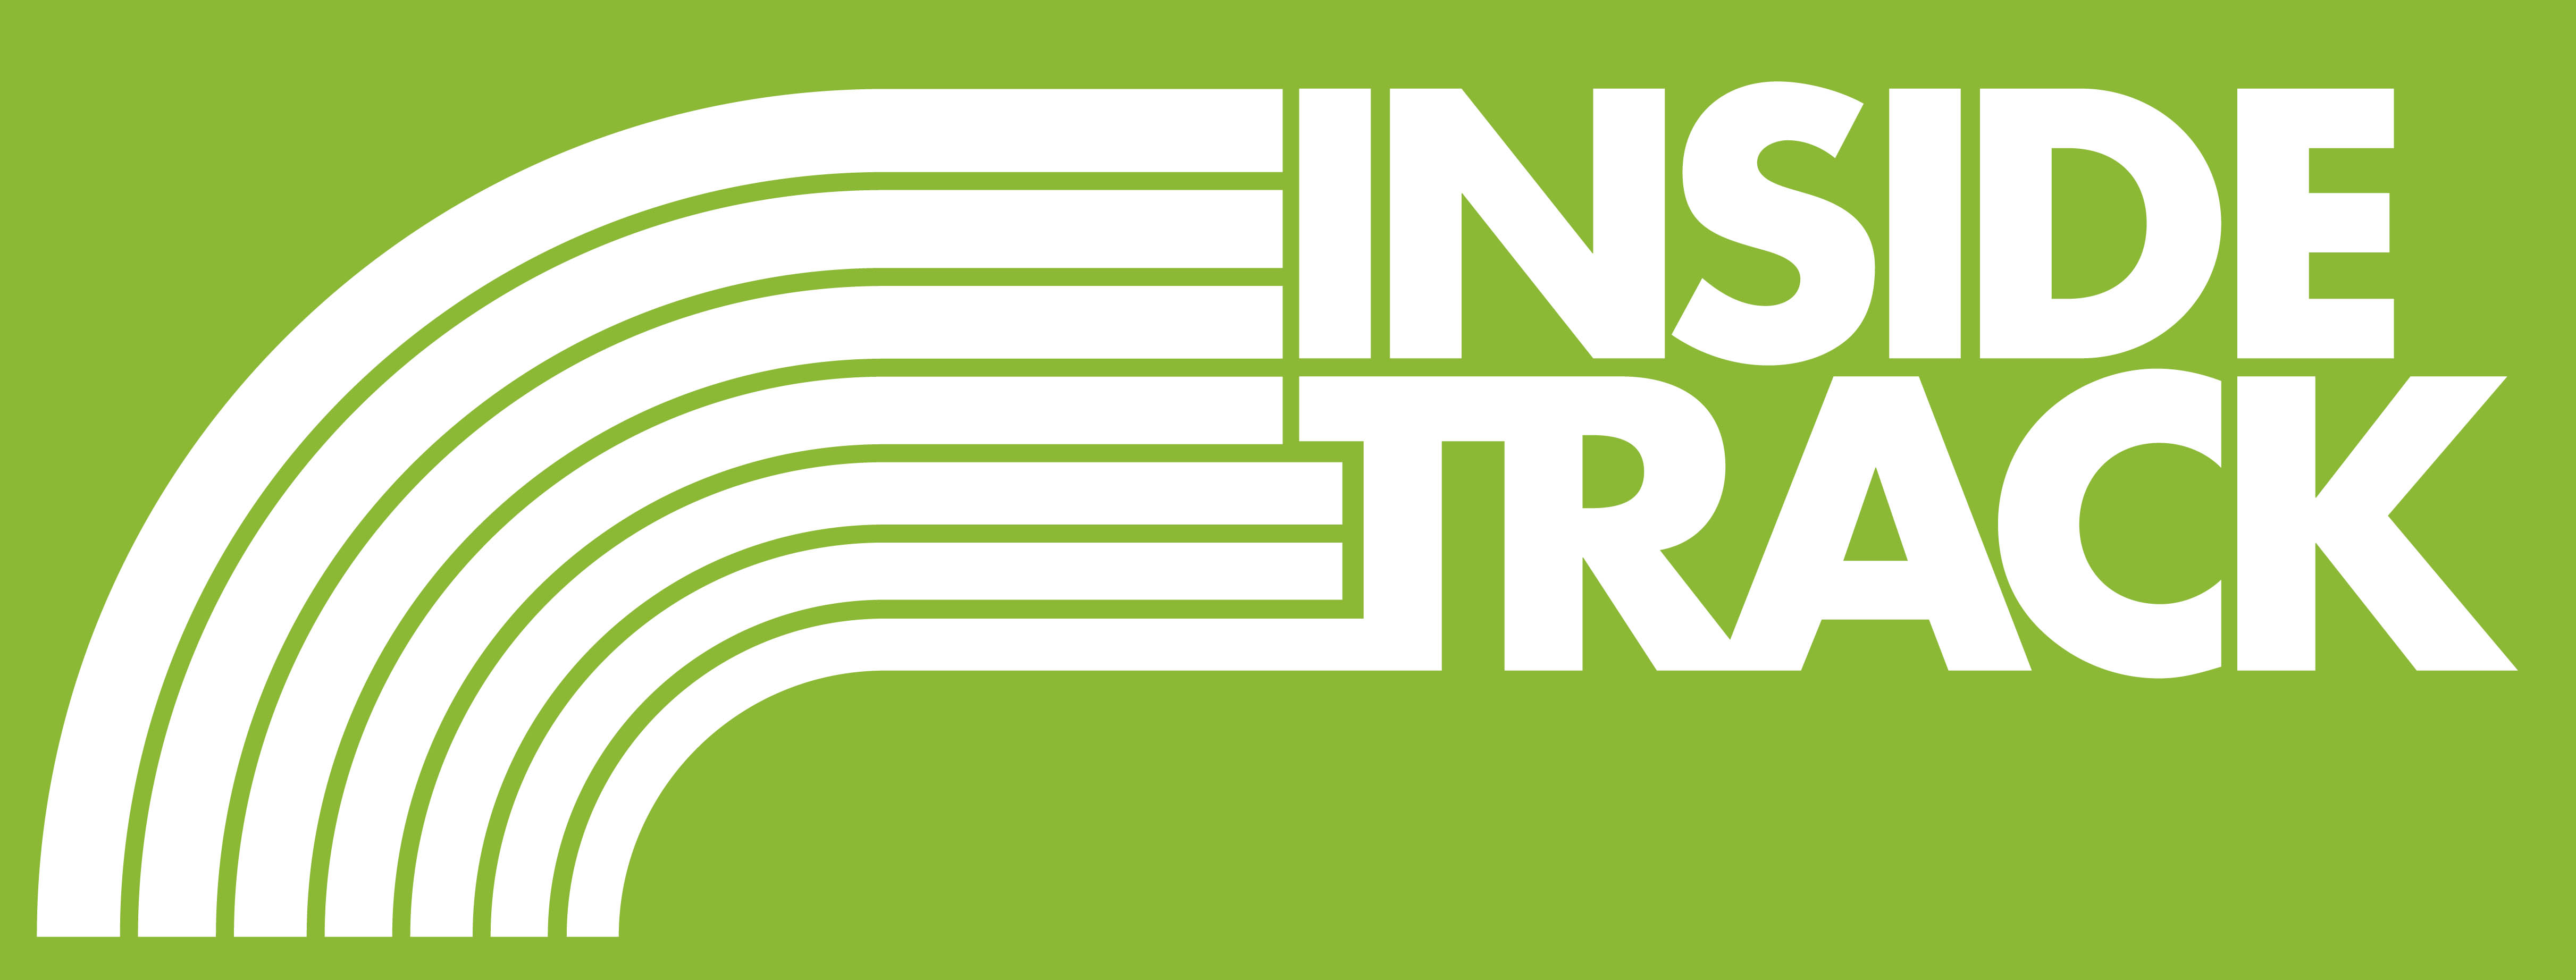 InsideTrack_logo